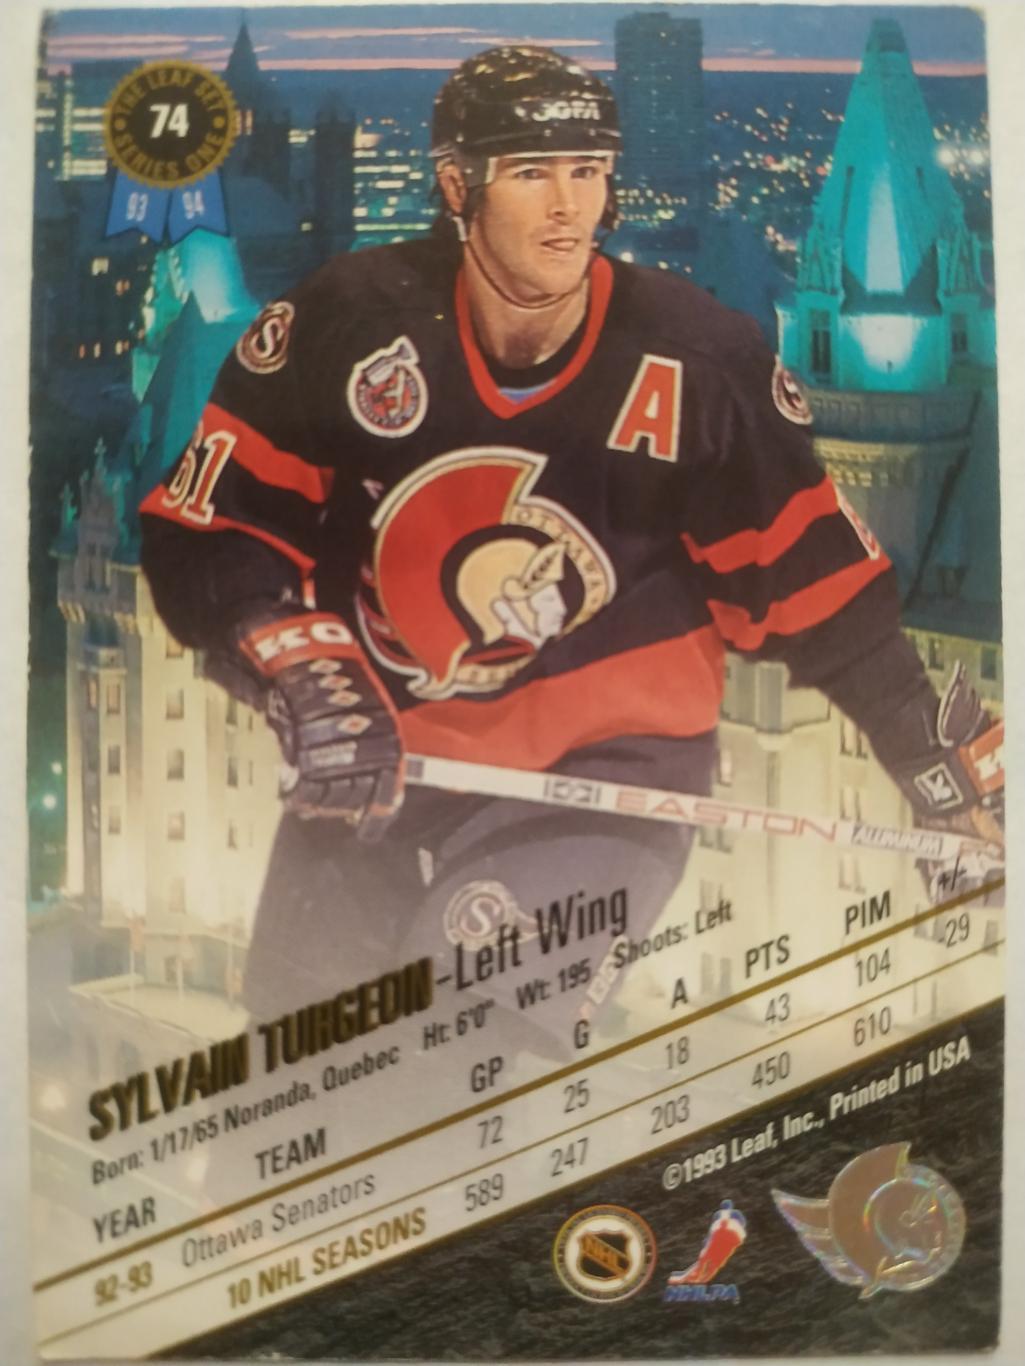 ХОККЕЙ КАРТОЧКА НХЛ LEAF SET SERIES ONE 1993-94 SYLVAIN TURGEON OTTAWA #74 1